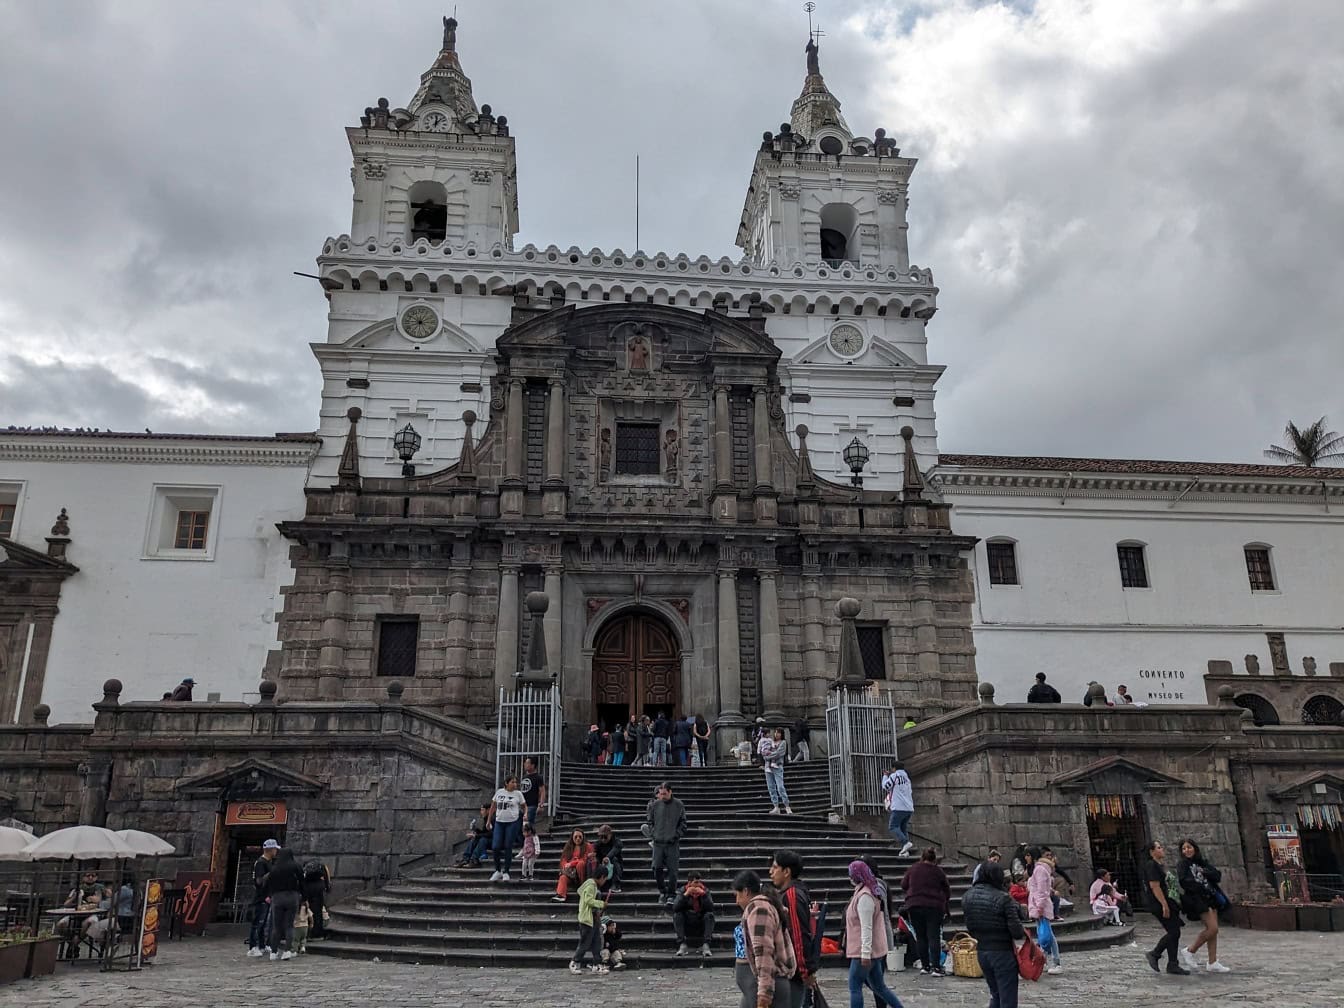 Emberek sétálnak fel a lépcsőn San Francisco római katolikus templomához Quitóban, Ecuador fővárosában